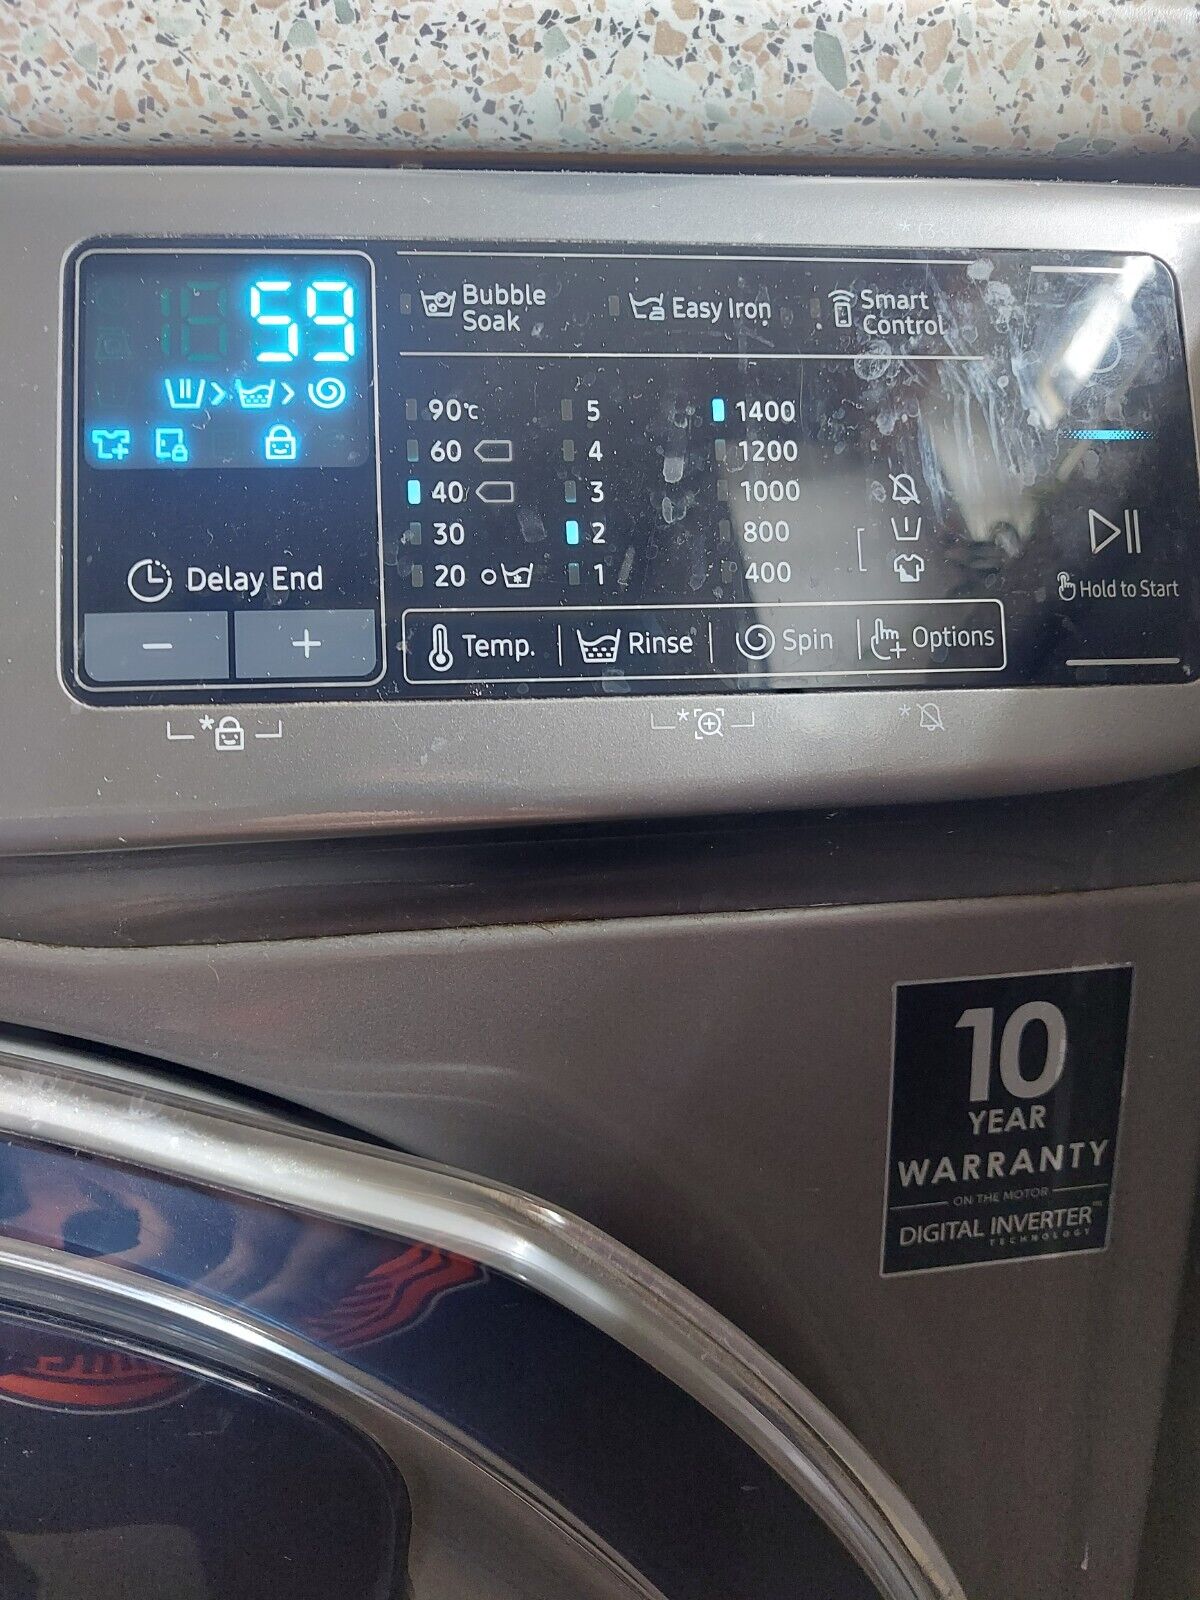 Samsung 10kg ADD WASH washing machine